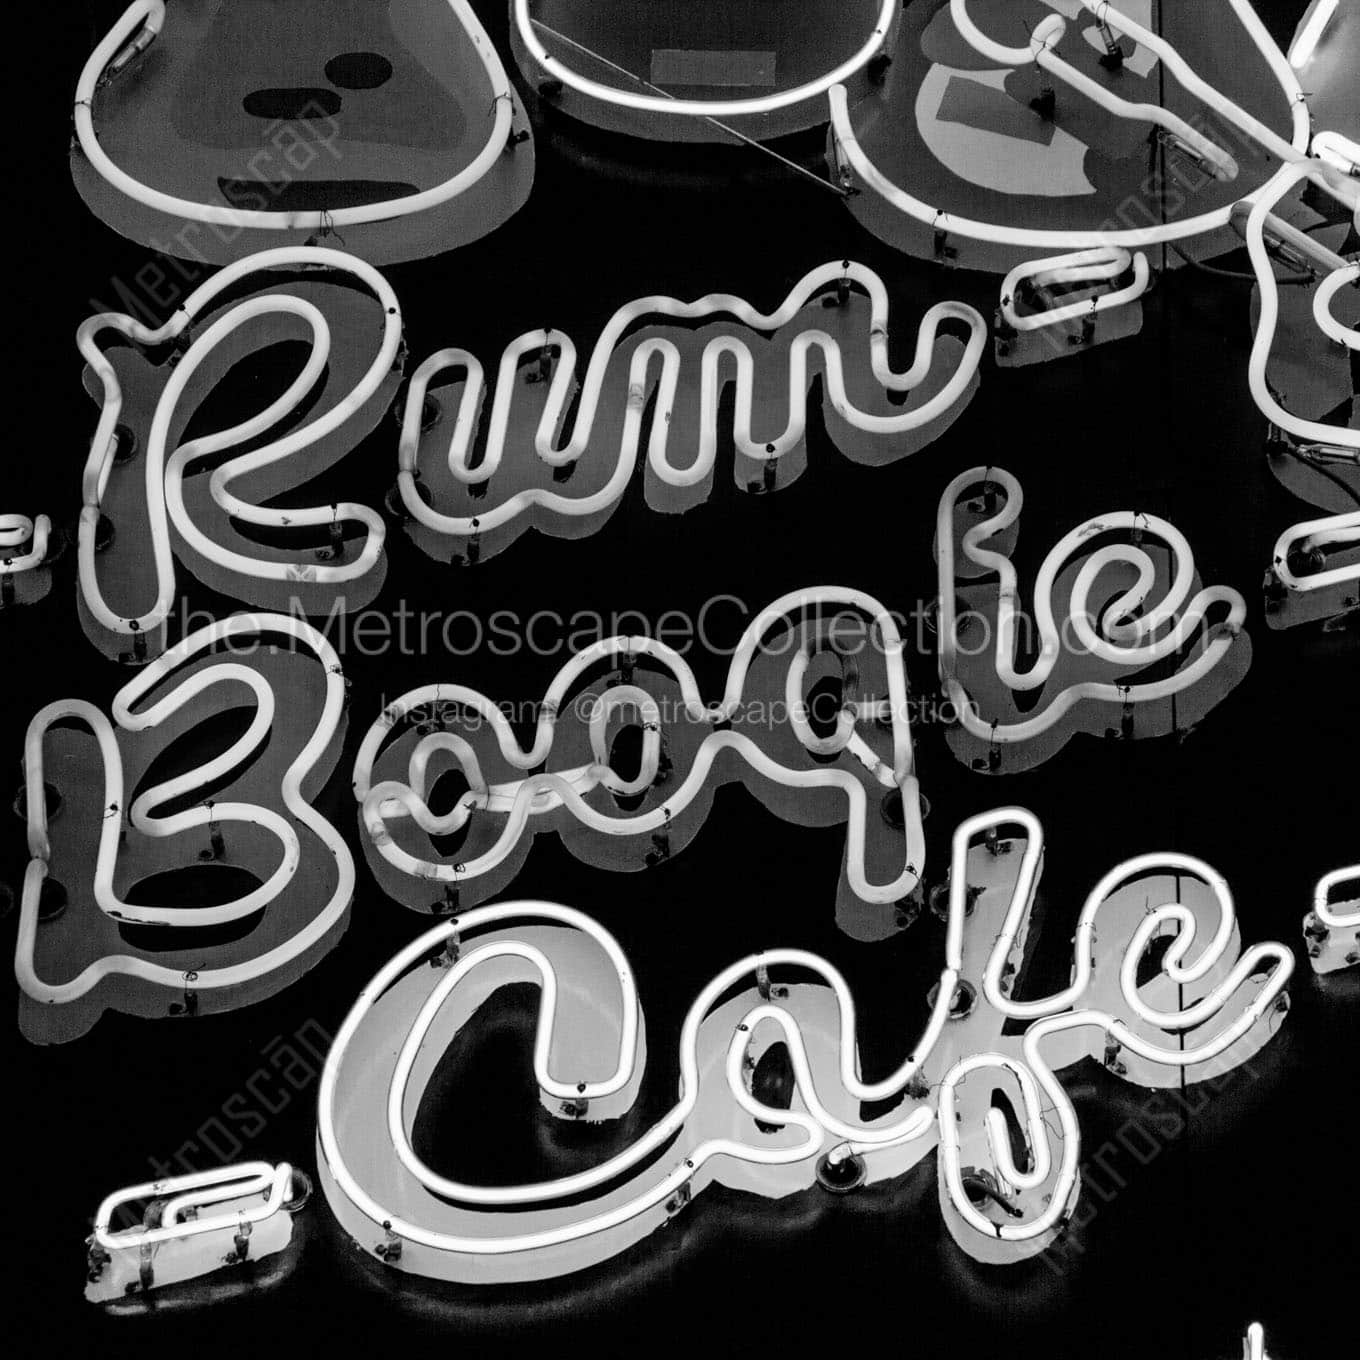 rum boogie cafe Black & White Office Art